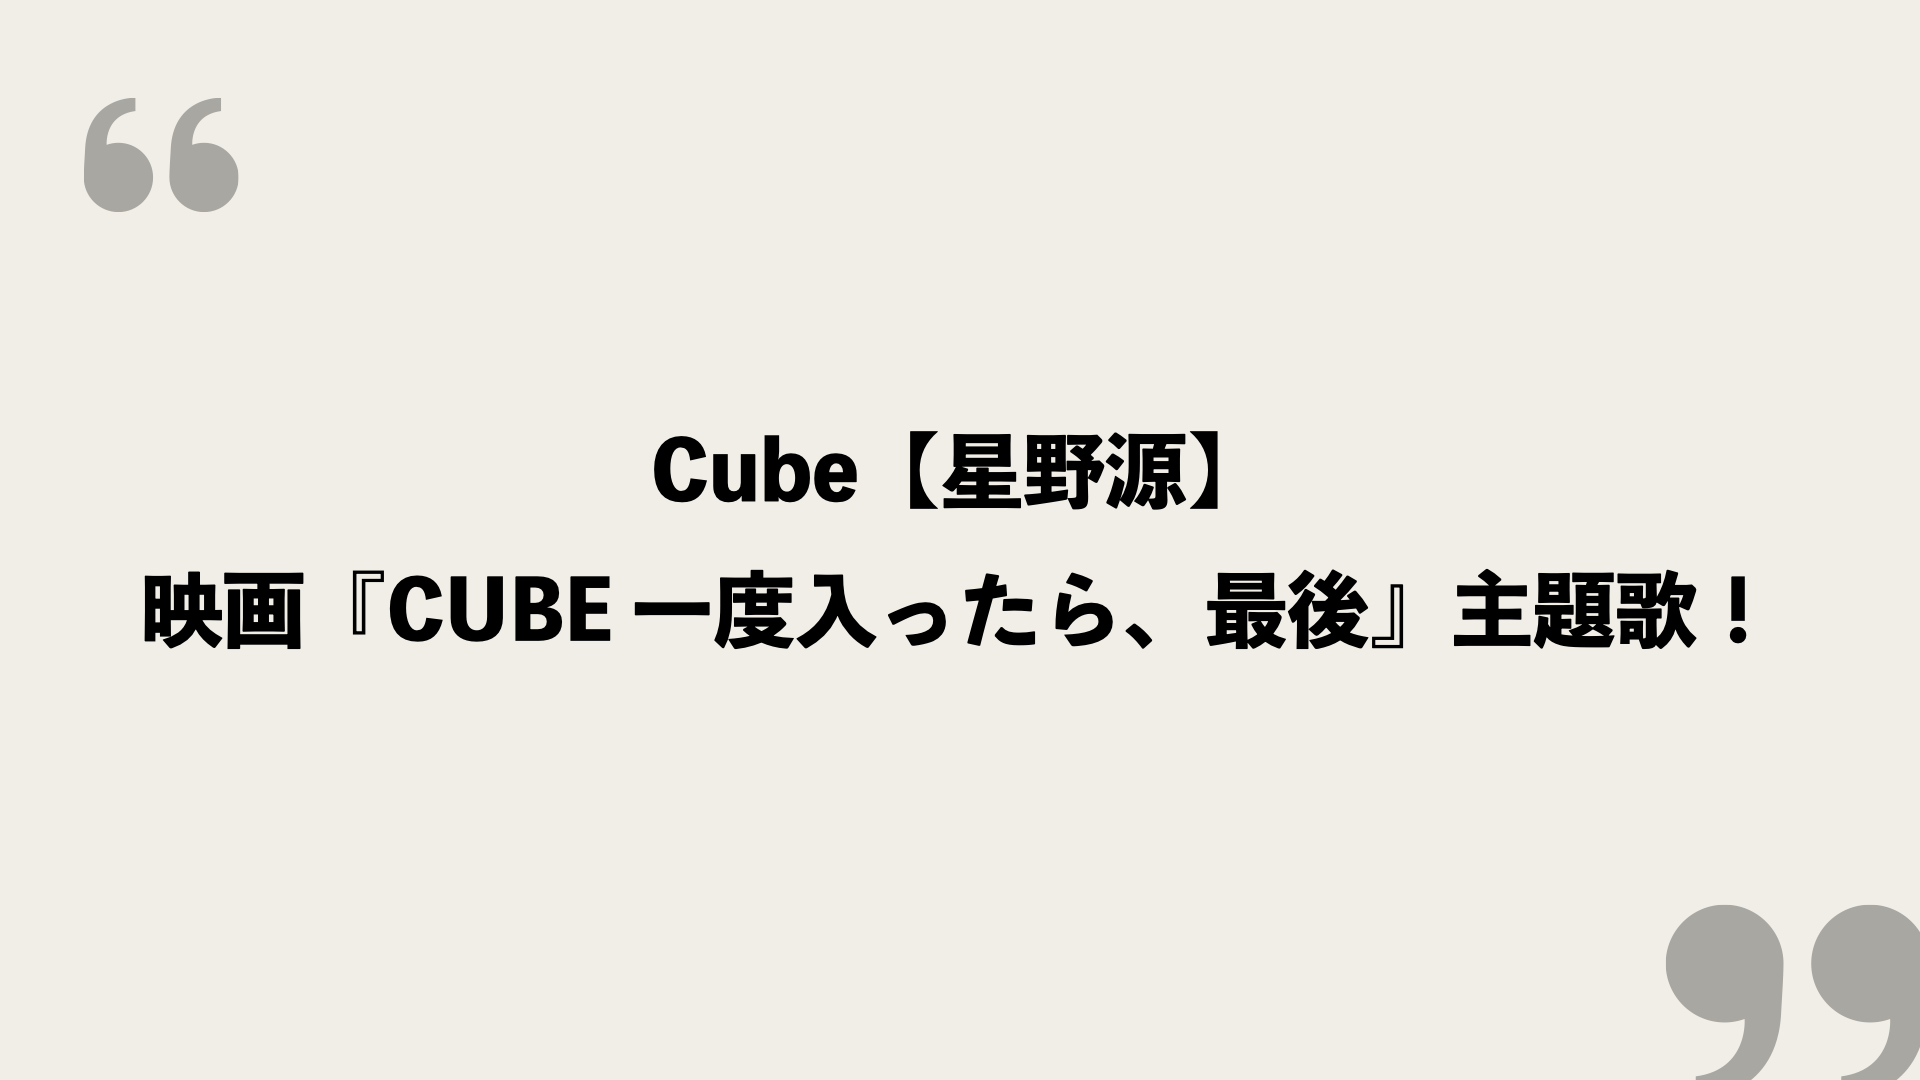 Cube 星野源 映画 Cube 一度入ったら 最後 主題歌 歌詞に込められた意味とは Framu Media